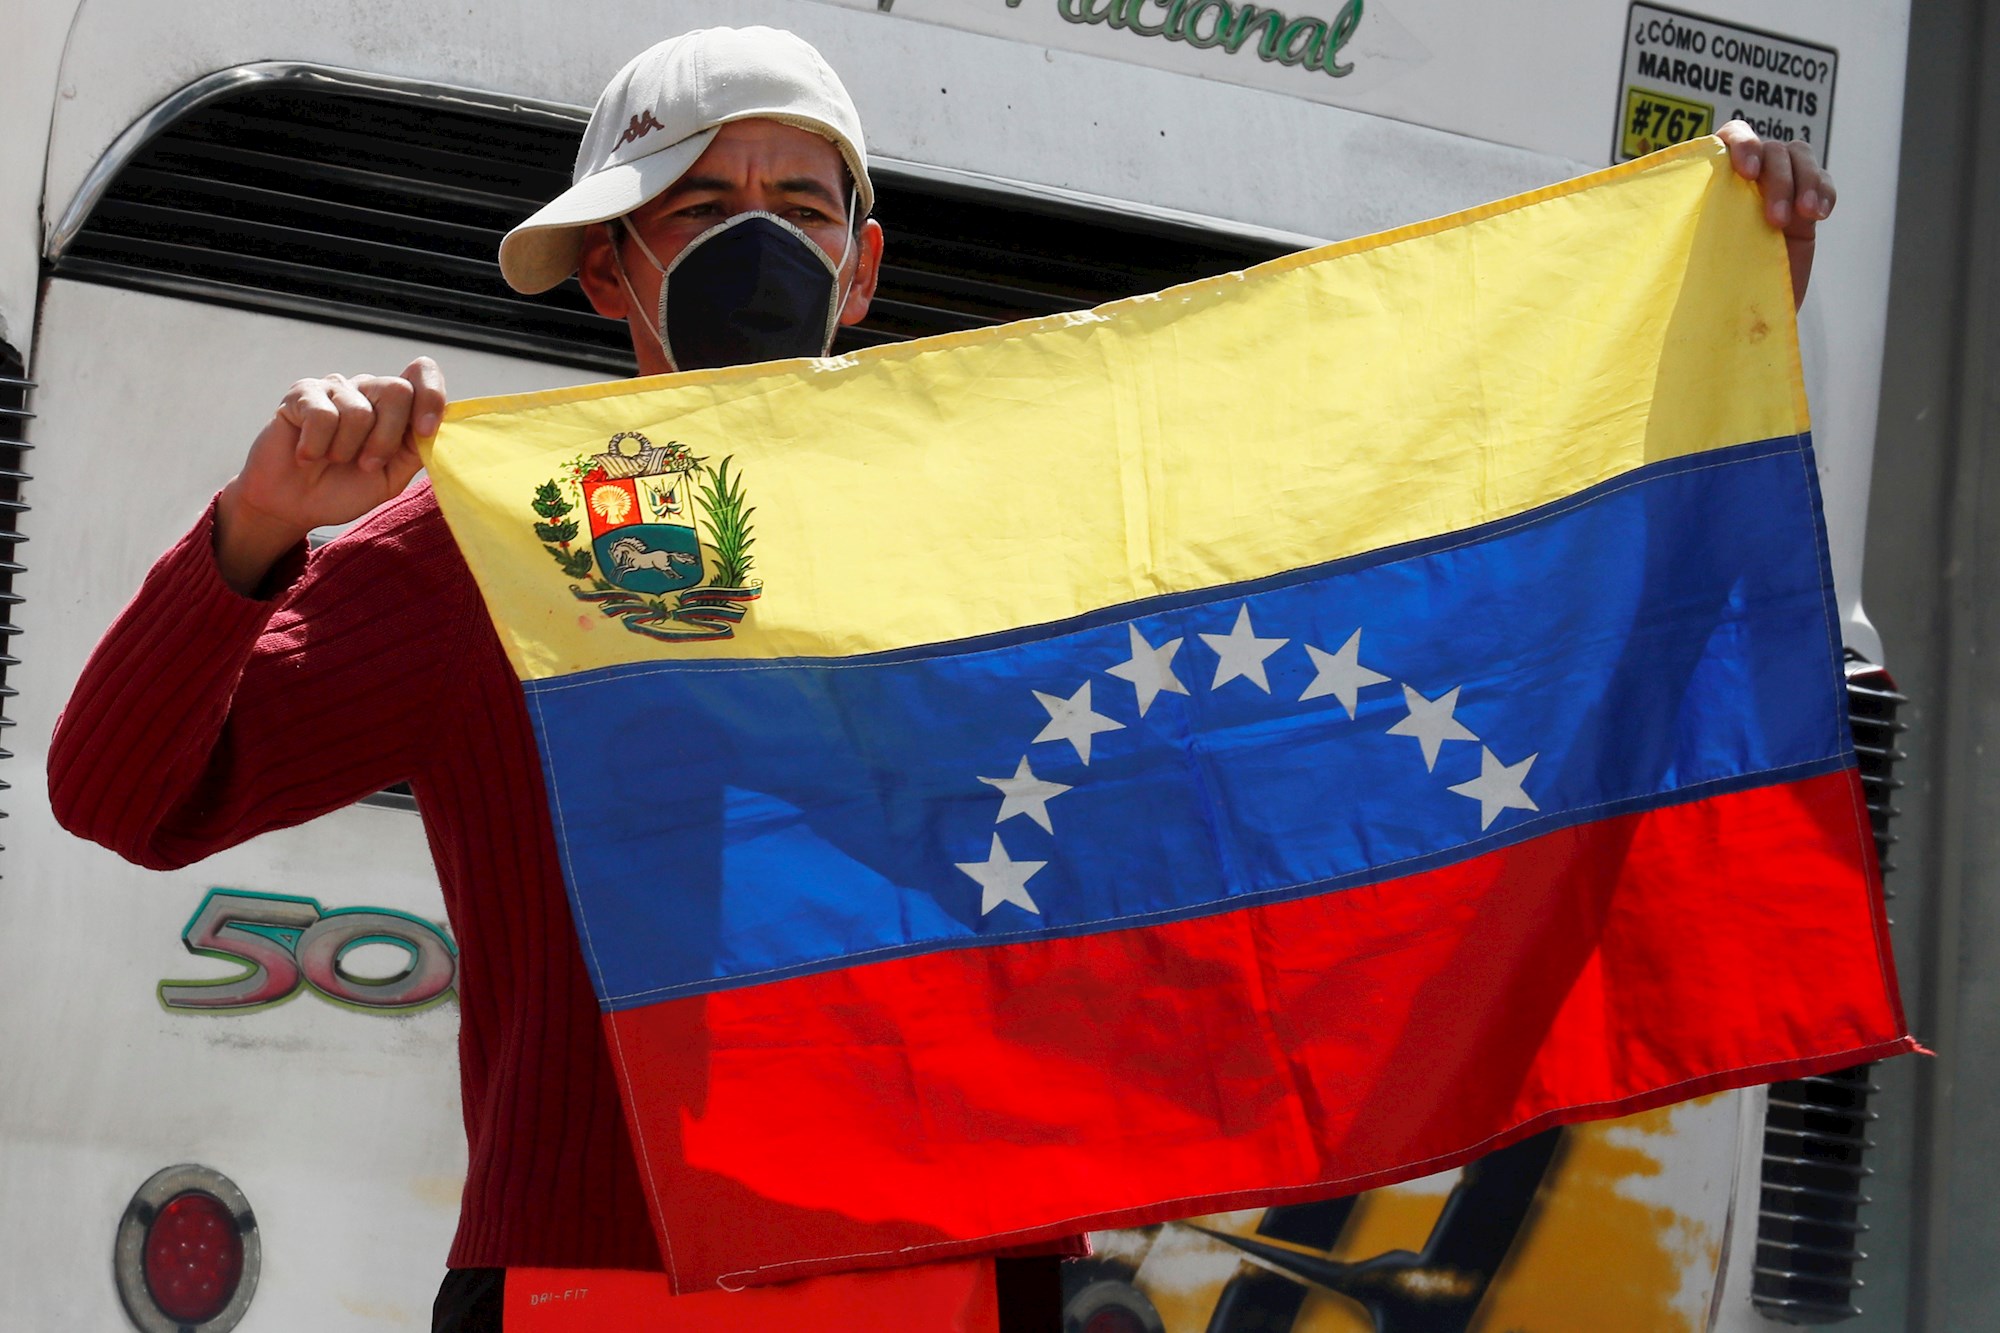 #NoSoyDelincuente: Venezolanos alzan su voz en las redes contra las declaraciones de la alcaldesa de Bogotá